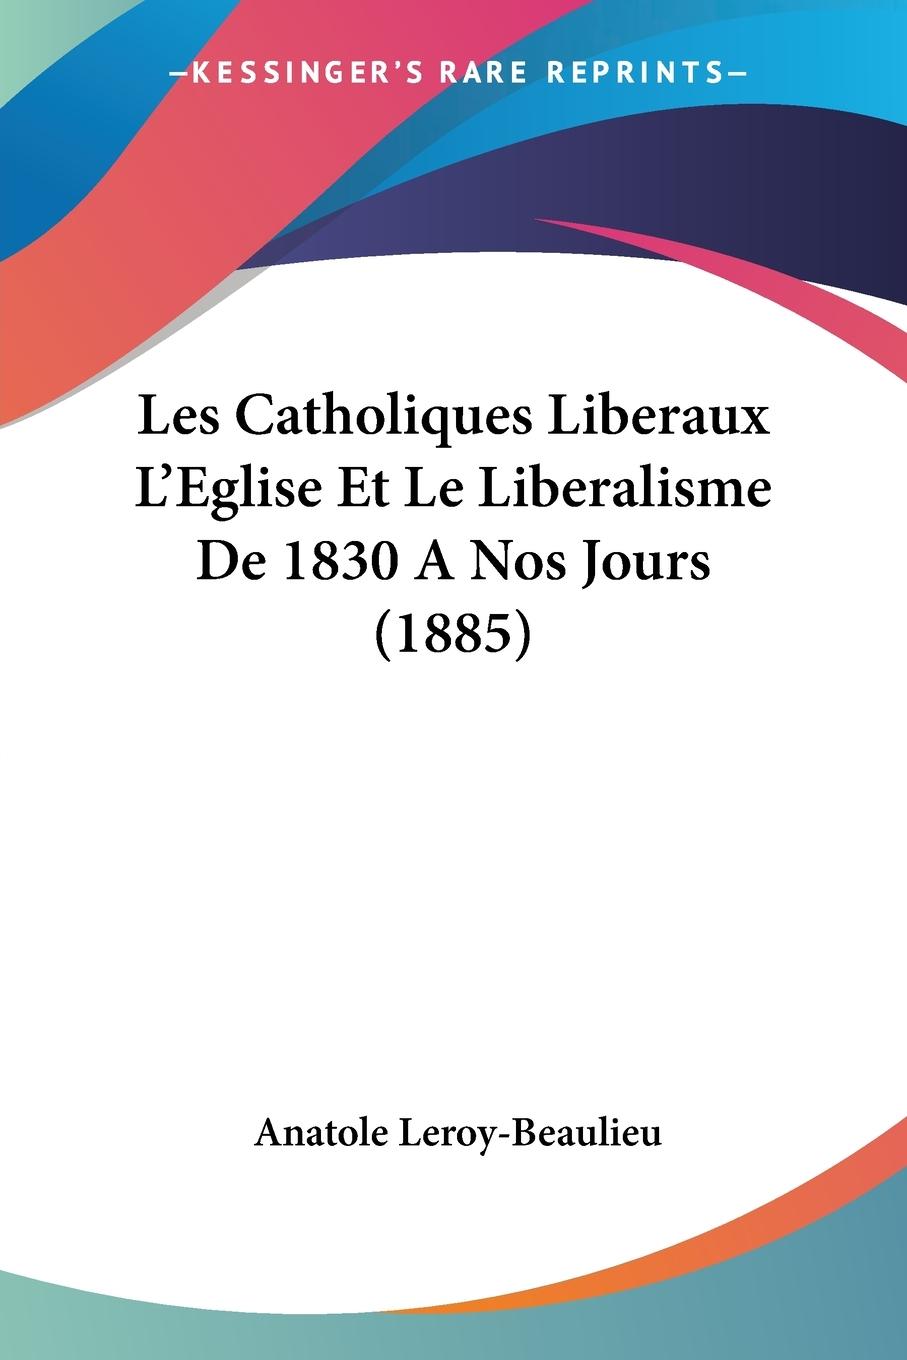 Les Catholiques Liberaux L Eglise Et Le Liberalisme De 1830 A Nos Jours (1885) - Leroy-Beaulieu, Anatole